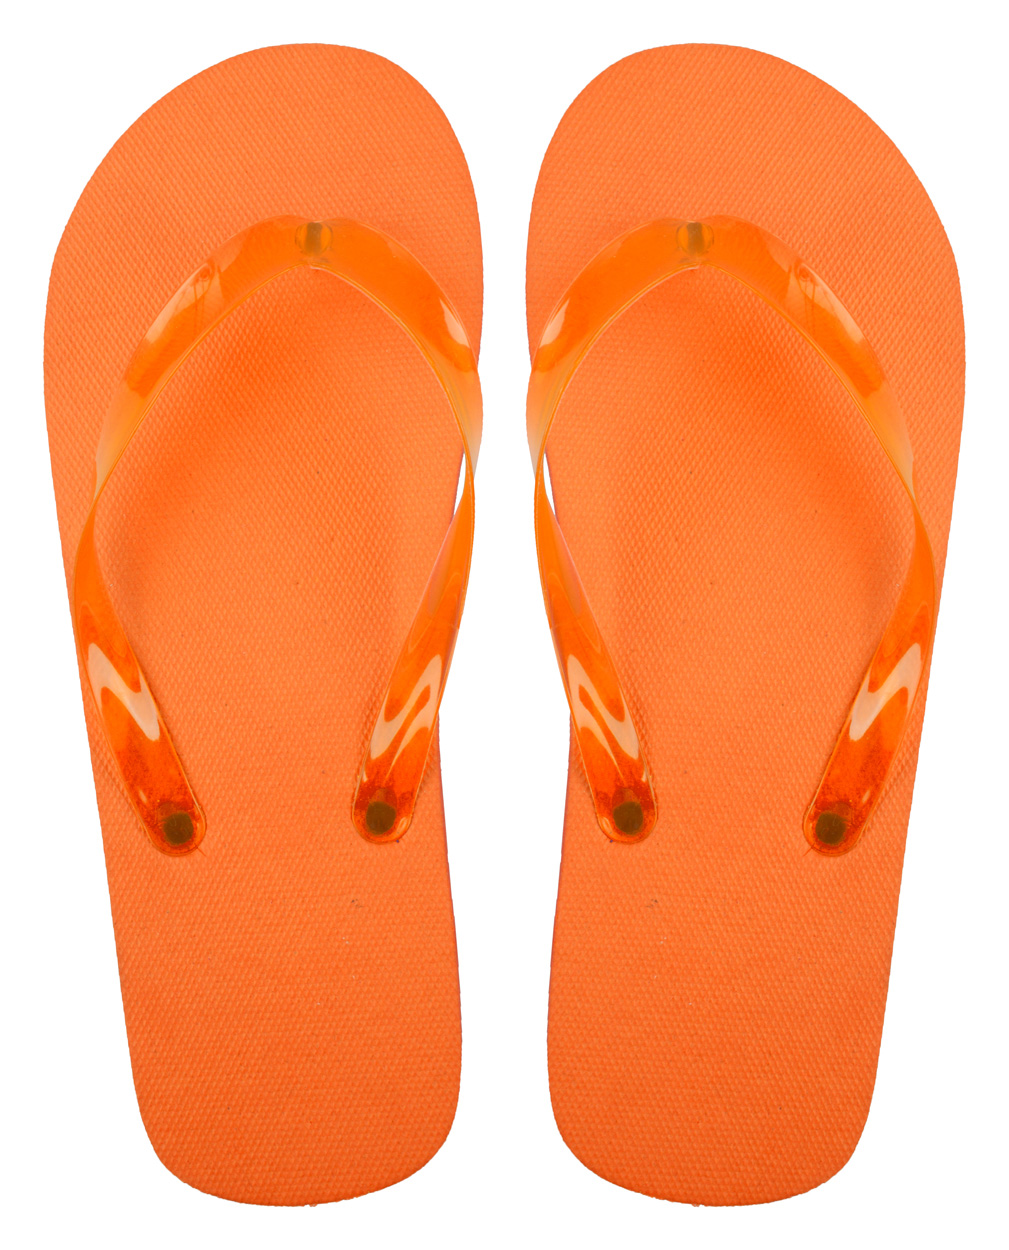 Boracay Beach Flip Flops - orange